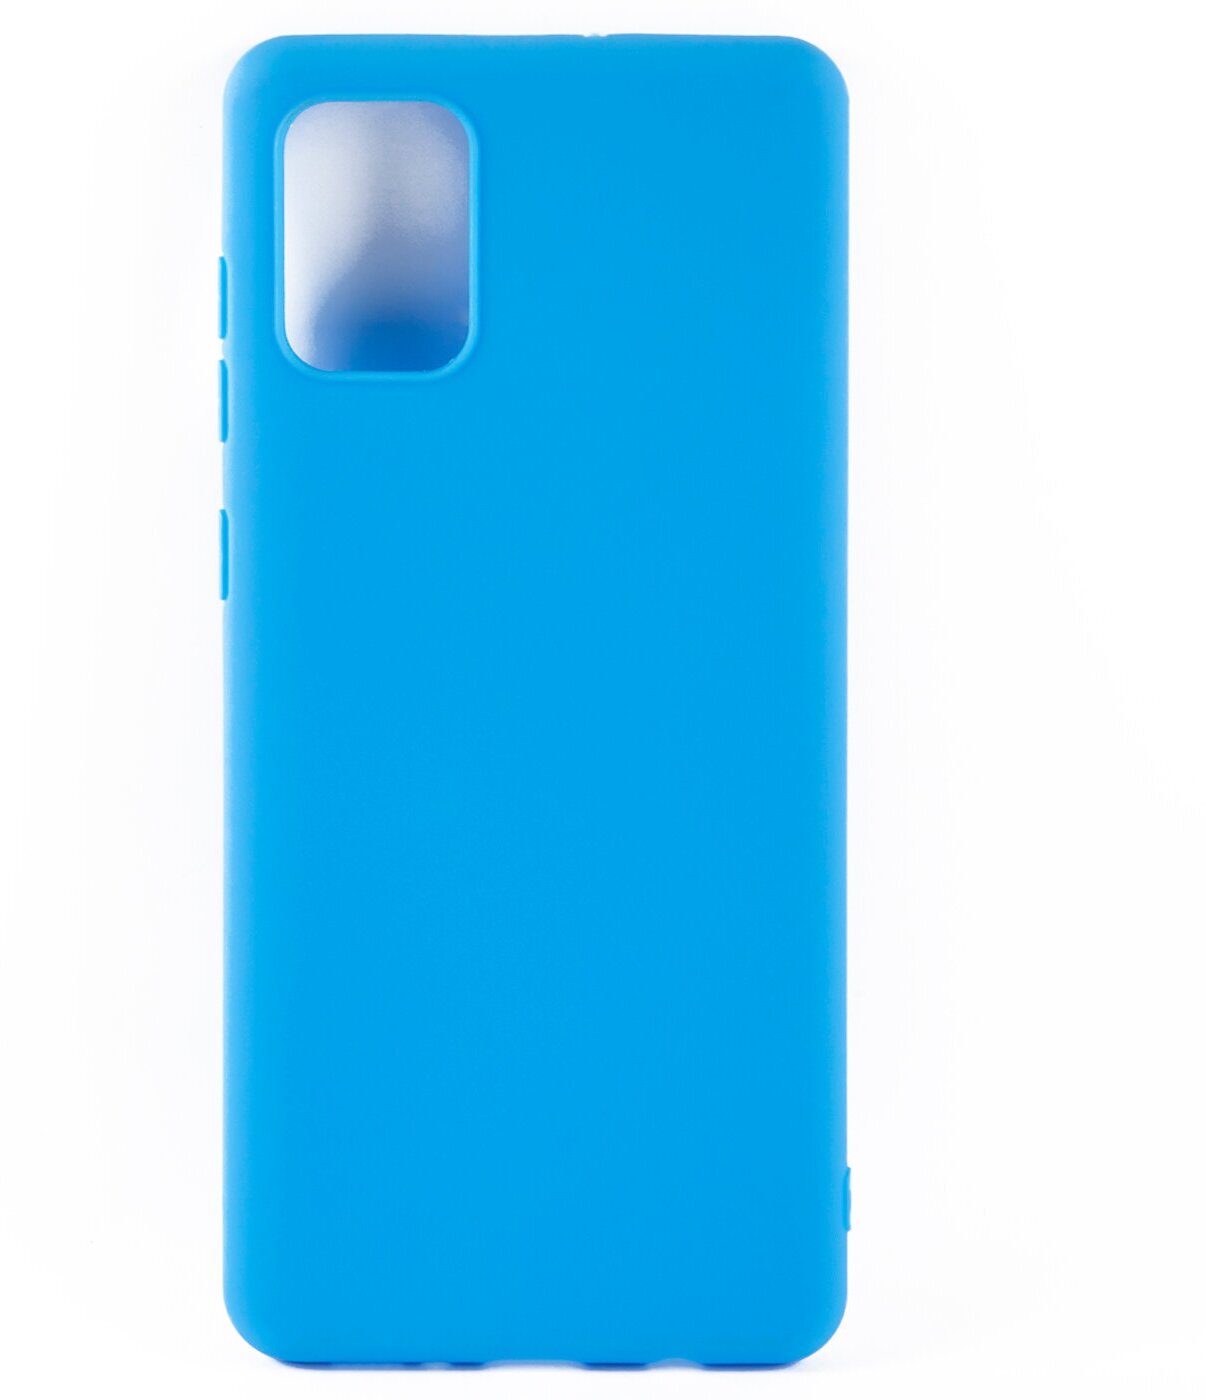 Защитный чехол для телефона Samsung Galaxy A71 A715/Самсунг Галакси А71 А715 силиконовая накладка голубой